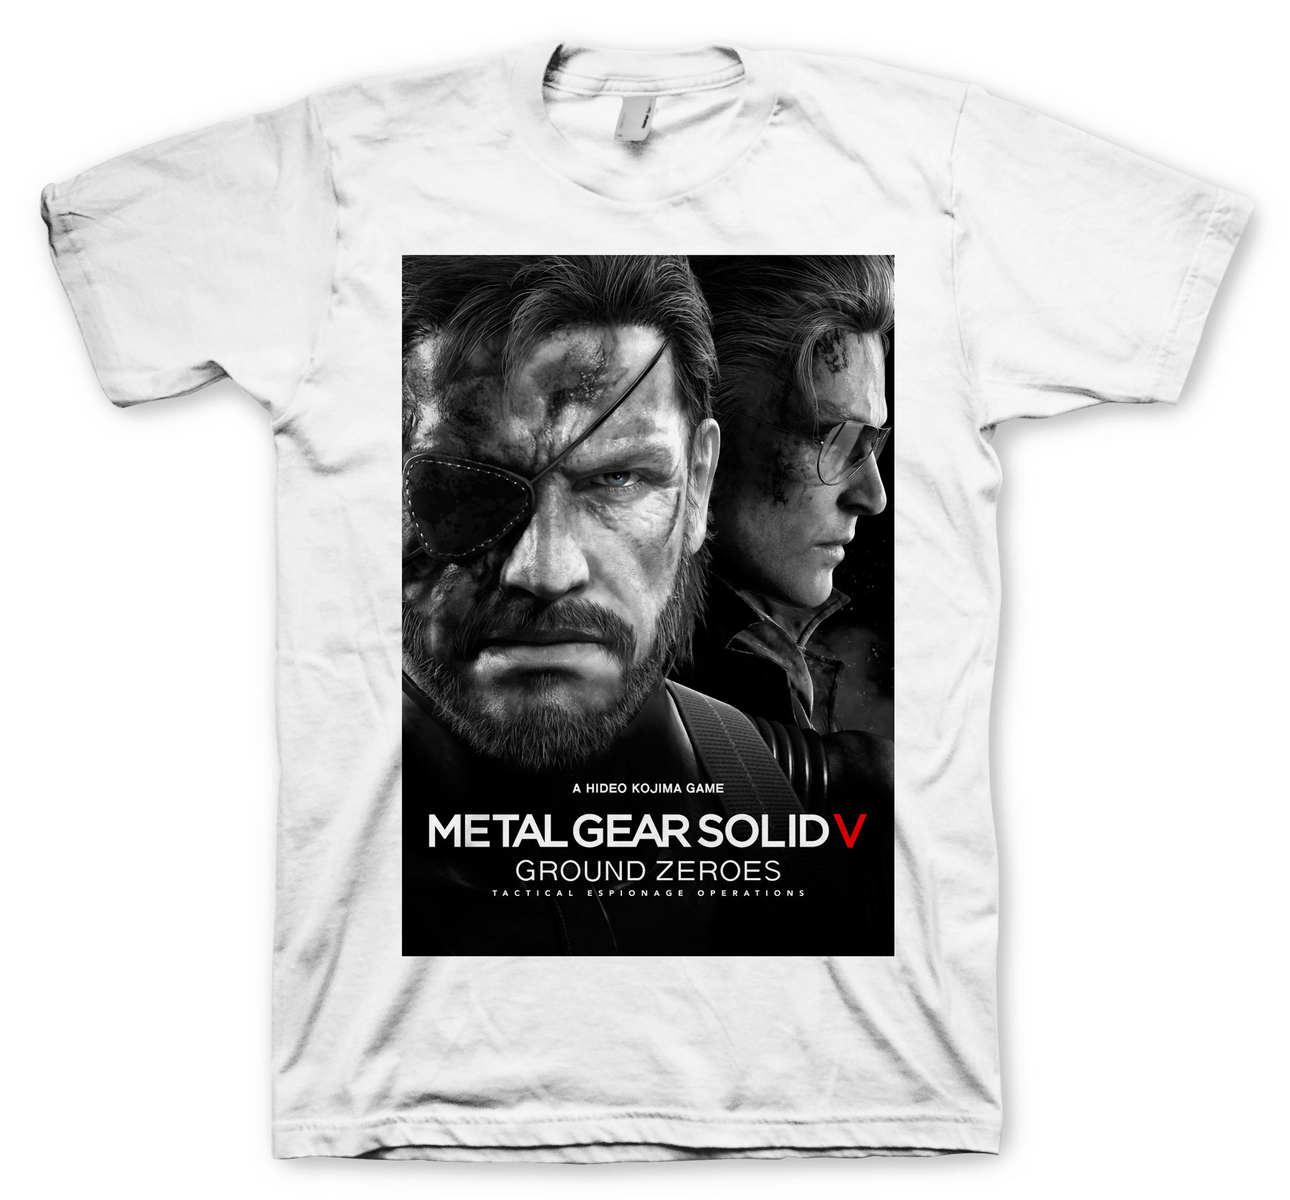 Ellas también pueden verstirse con la ropa de Metal Gear - MeriStation